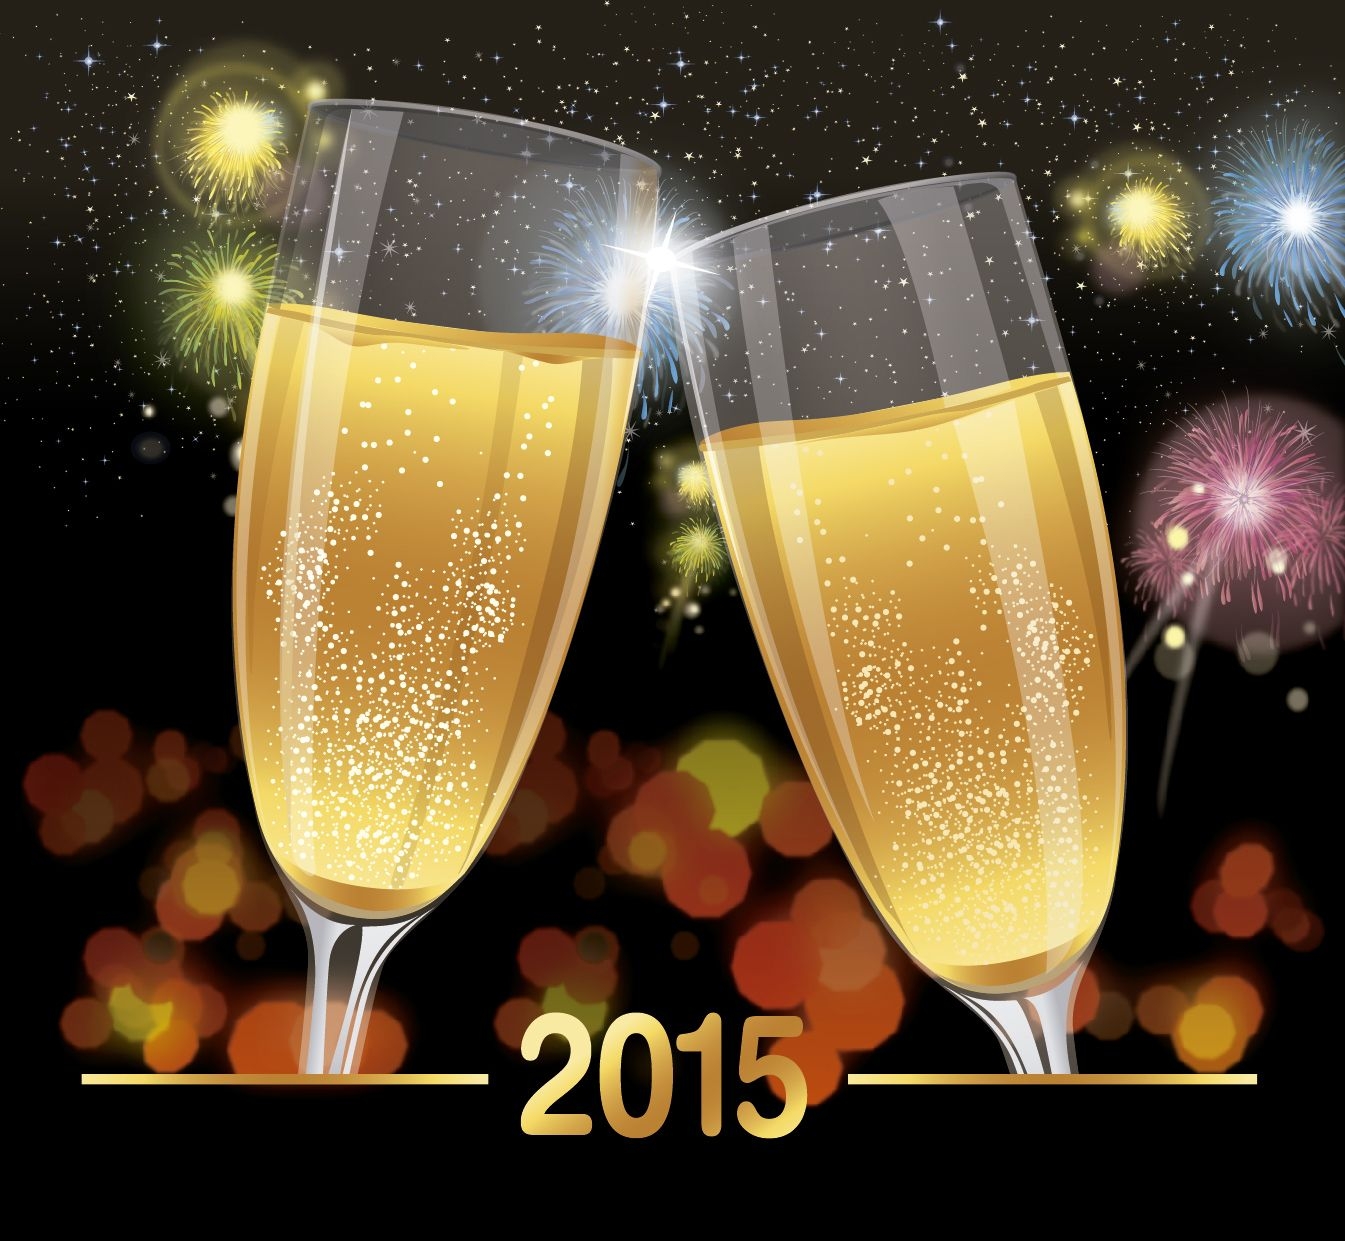 2015 celebration toast background